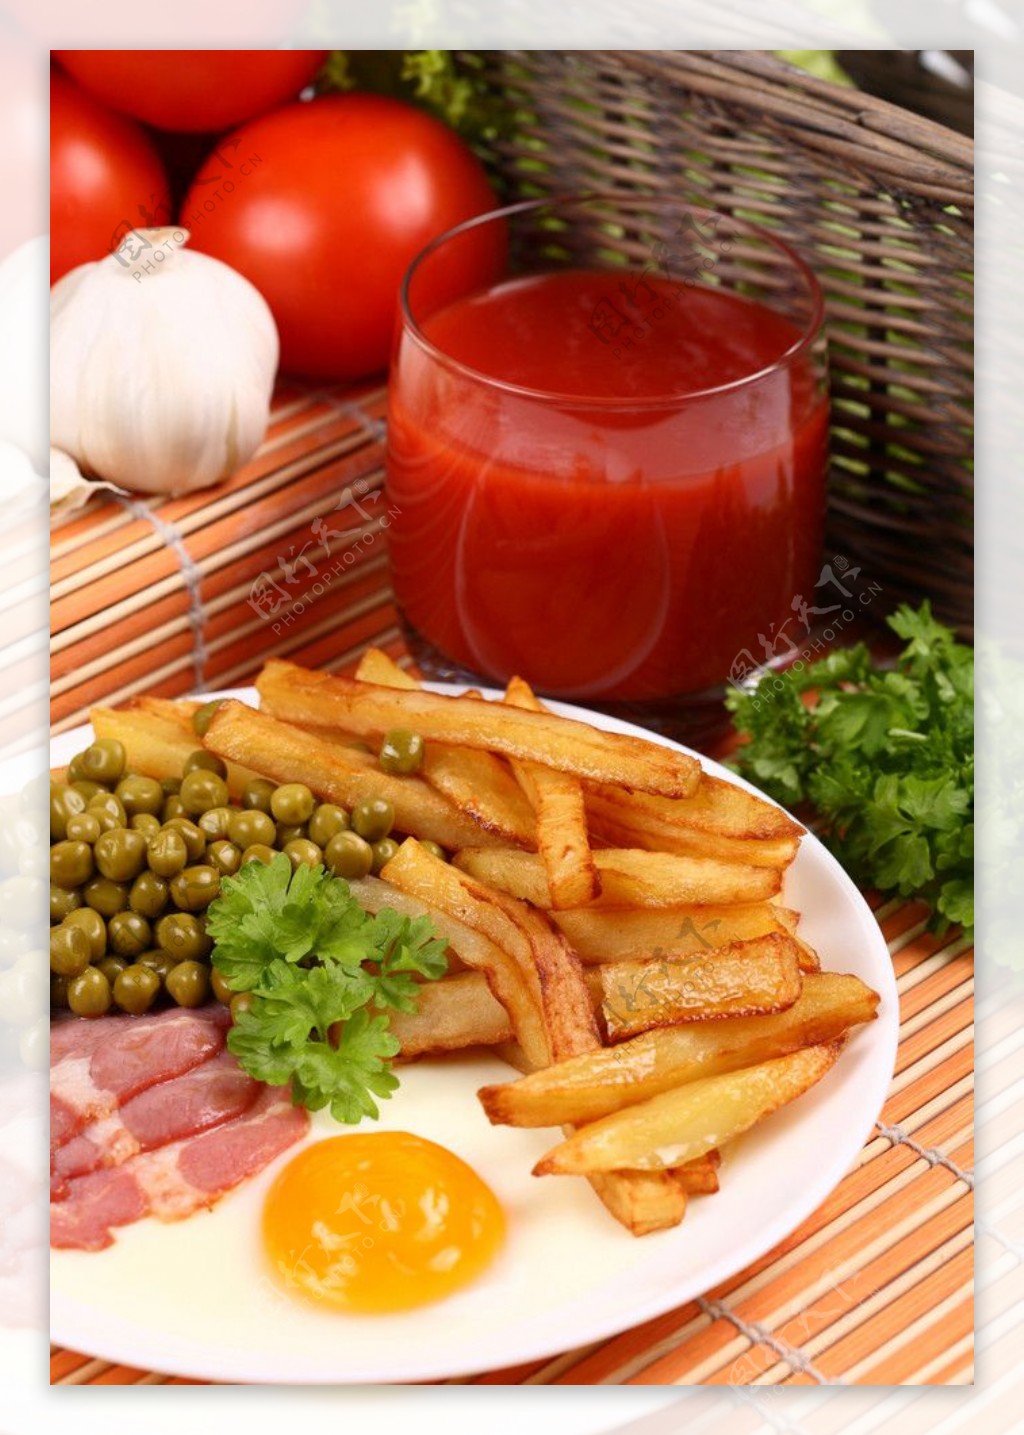 西红柿汁果汁炸薯条牛排蛋黄西红柿香菜图片